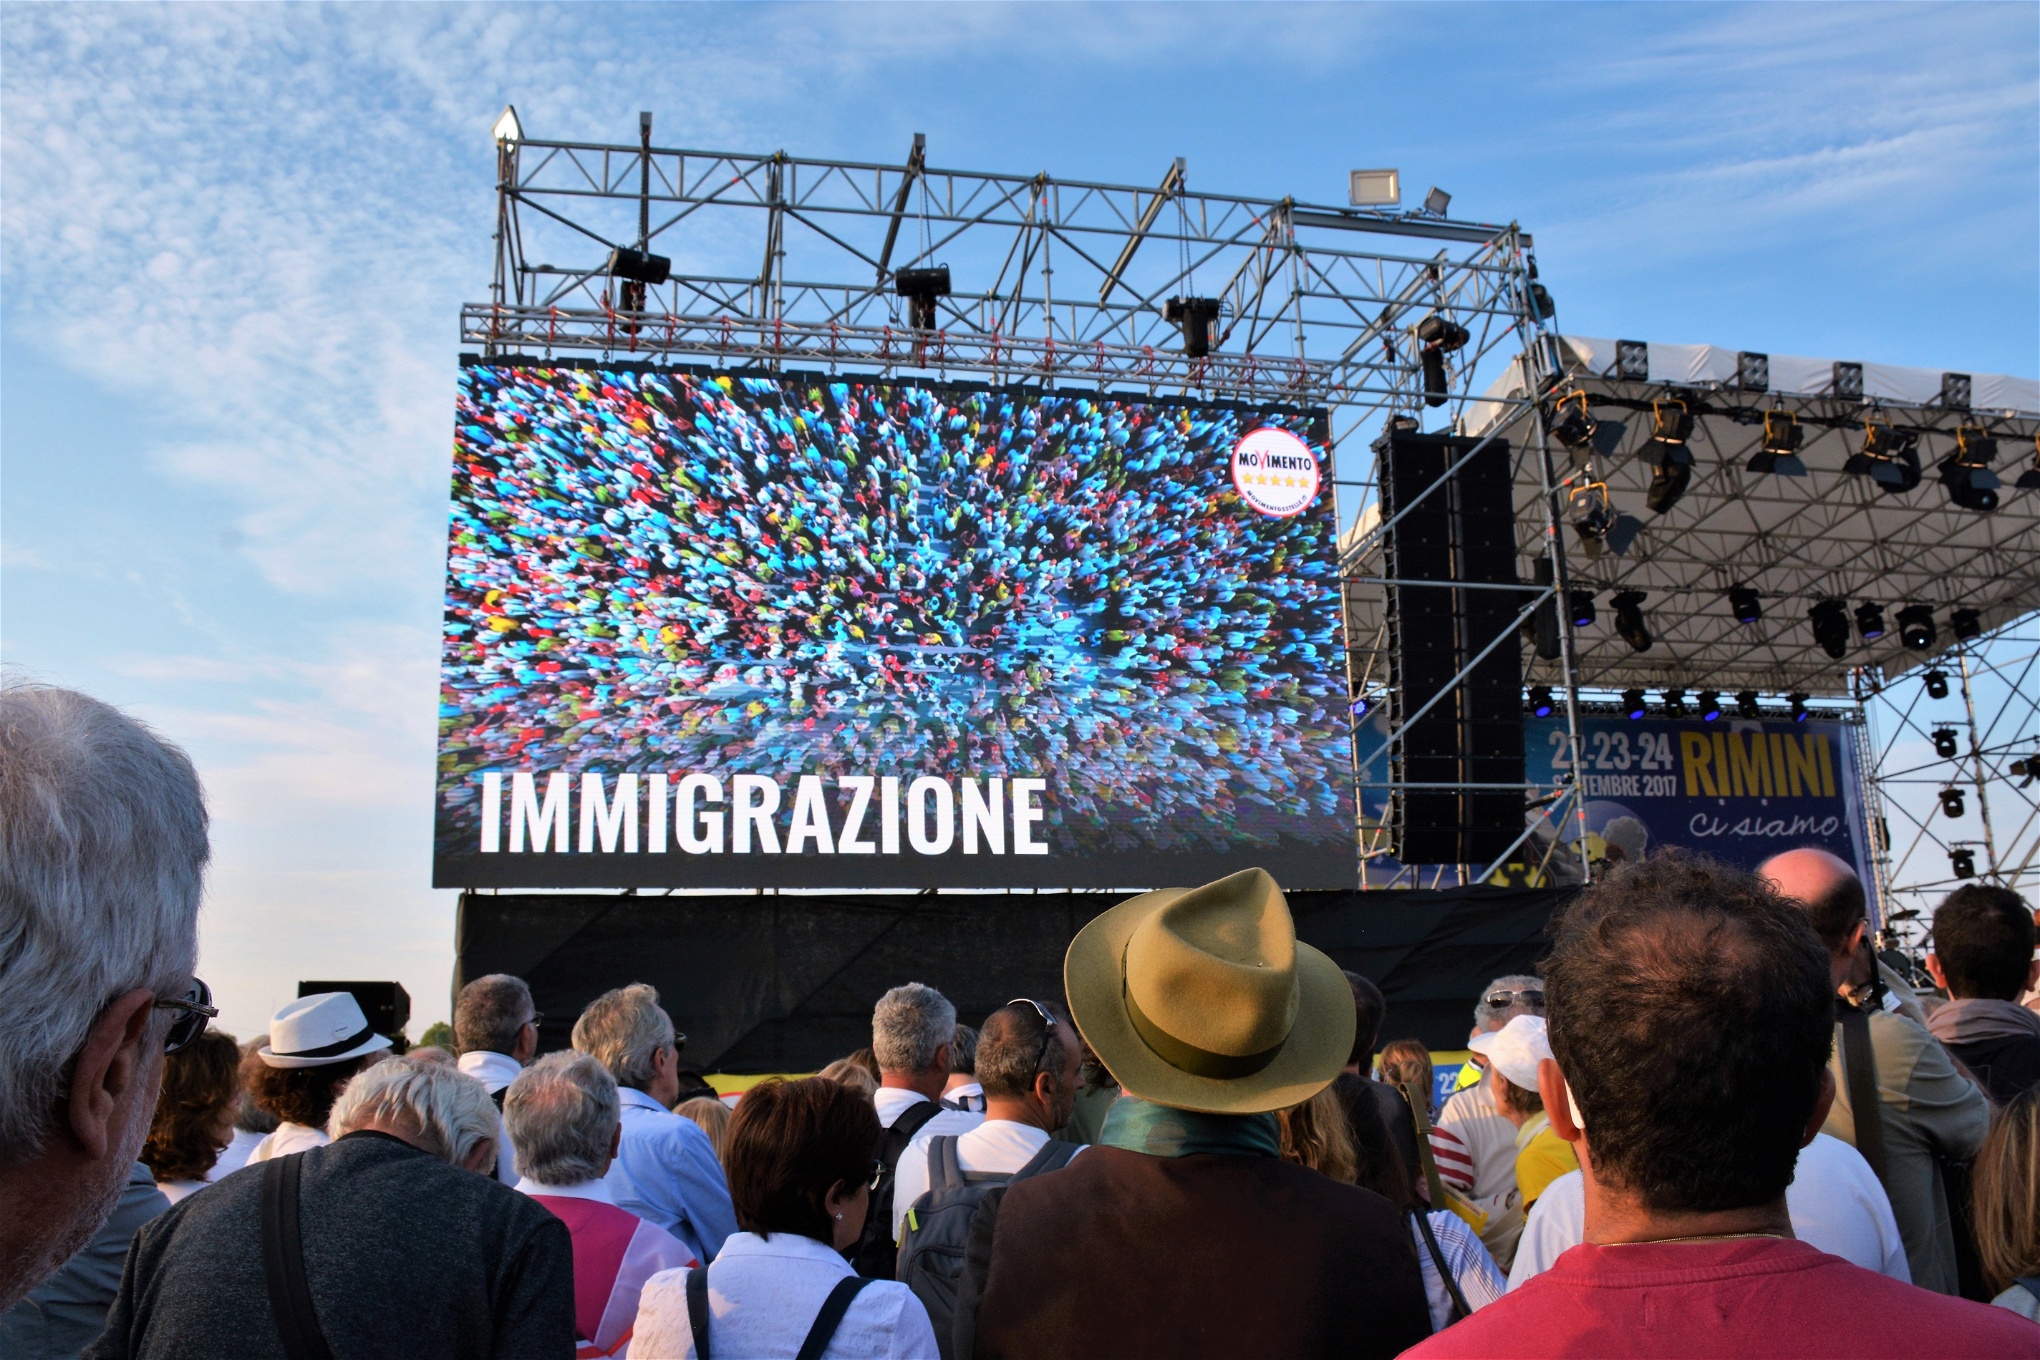 I september förra året höll Femstjärnerörelsen partikonvent i Rimini, med siktet
inställt på regeringsmakten 2018. Rörelsen har utvecklats
till ett parti med relativt
stor väljarbas och parlamentarisk representation. De ansluter sig till en asylpolitik
som förespråkas
av tunga EU-länder, som syftar till att flytta EU:s gränser längre bort.